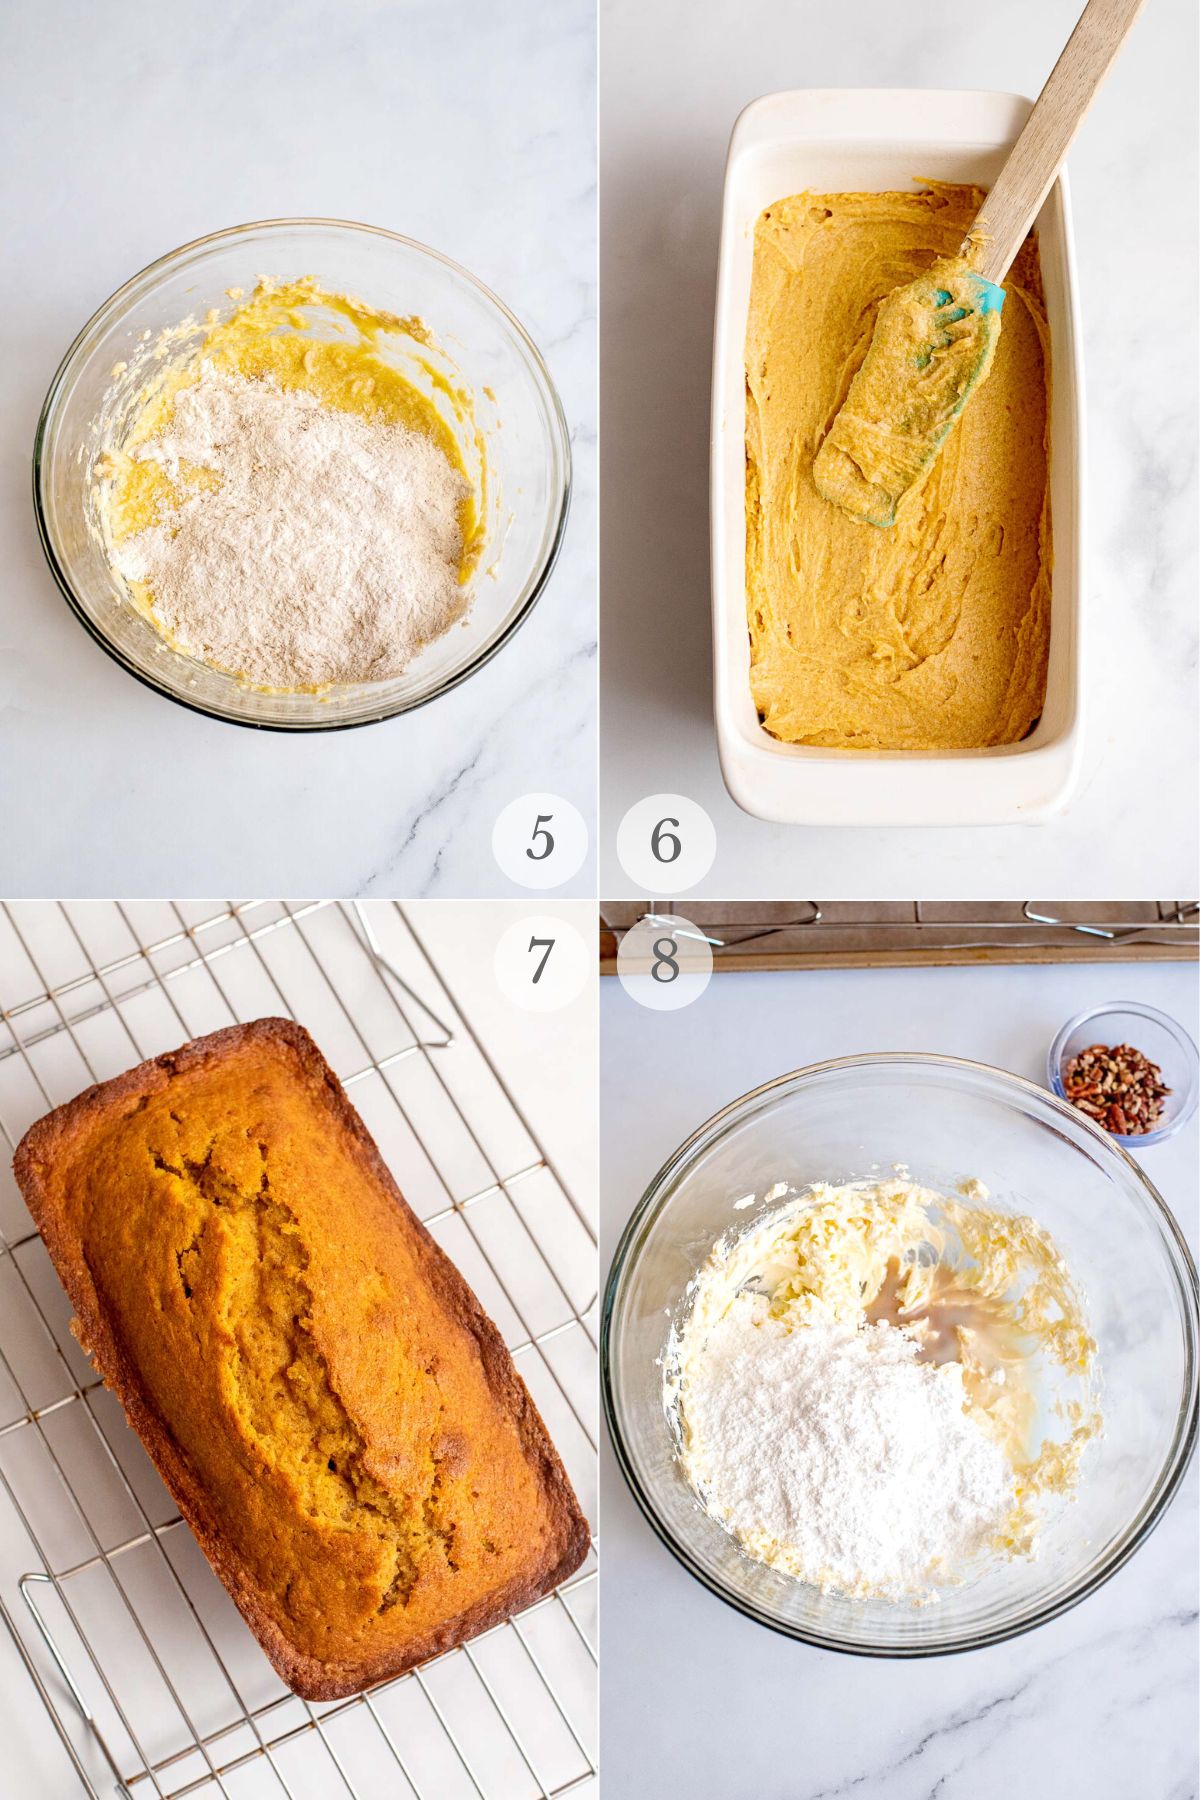 best pumpkin bread recipe steps 5-8.